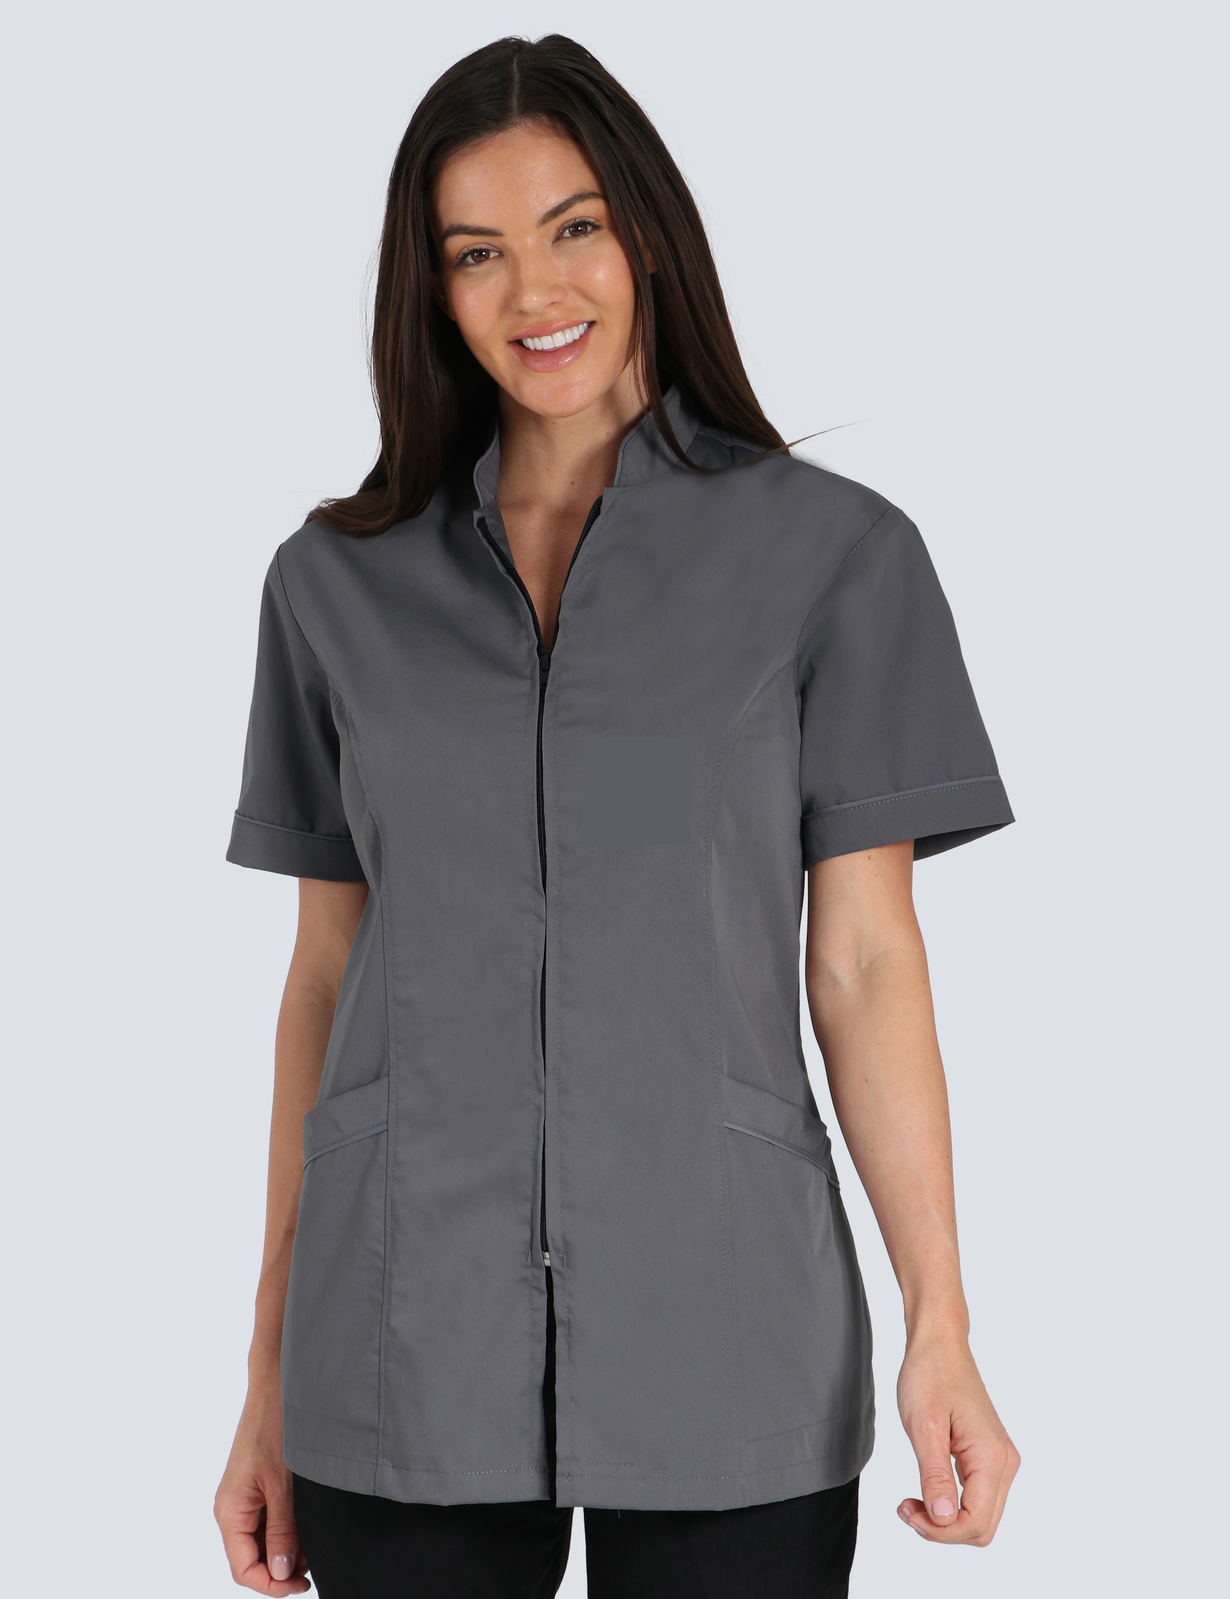 Dental Assistant Uniform Top Bundle (Nelli Top zip front in Grey incl Logo)